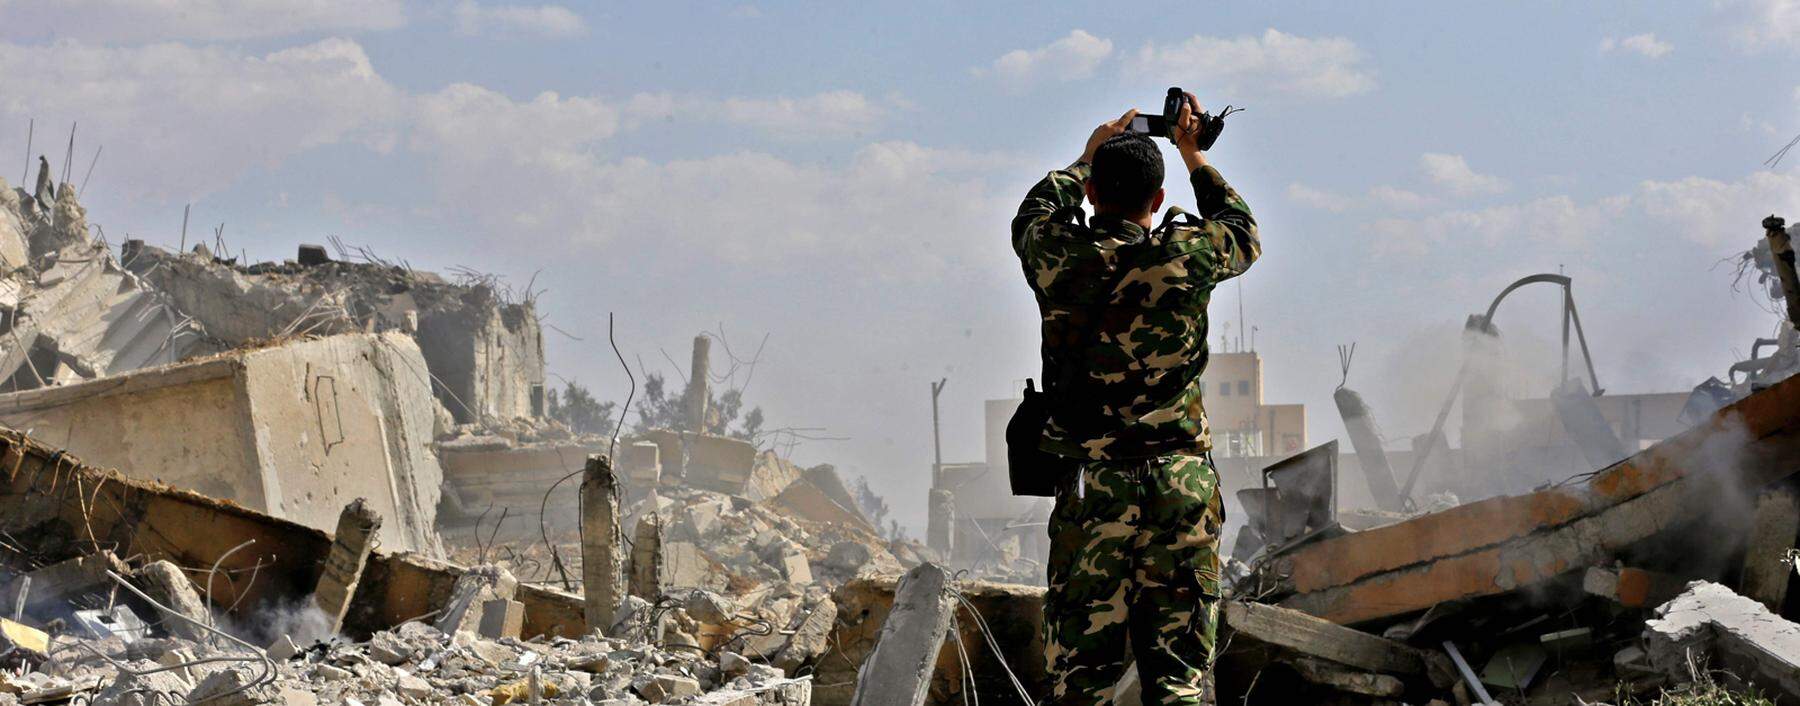 Inspektion der Kriegsschäden. Der seit neun Jahren tobende Konflikt hat in vielen Städten Syriens schwere Verwüstungen hinterlassen. Machthaber Bashar al-Assad hat Trümmerfelder zurückerobert.